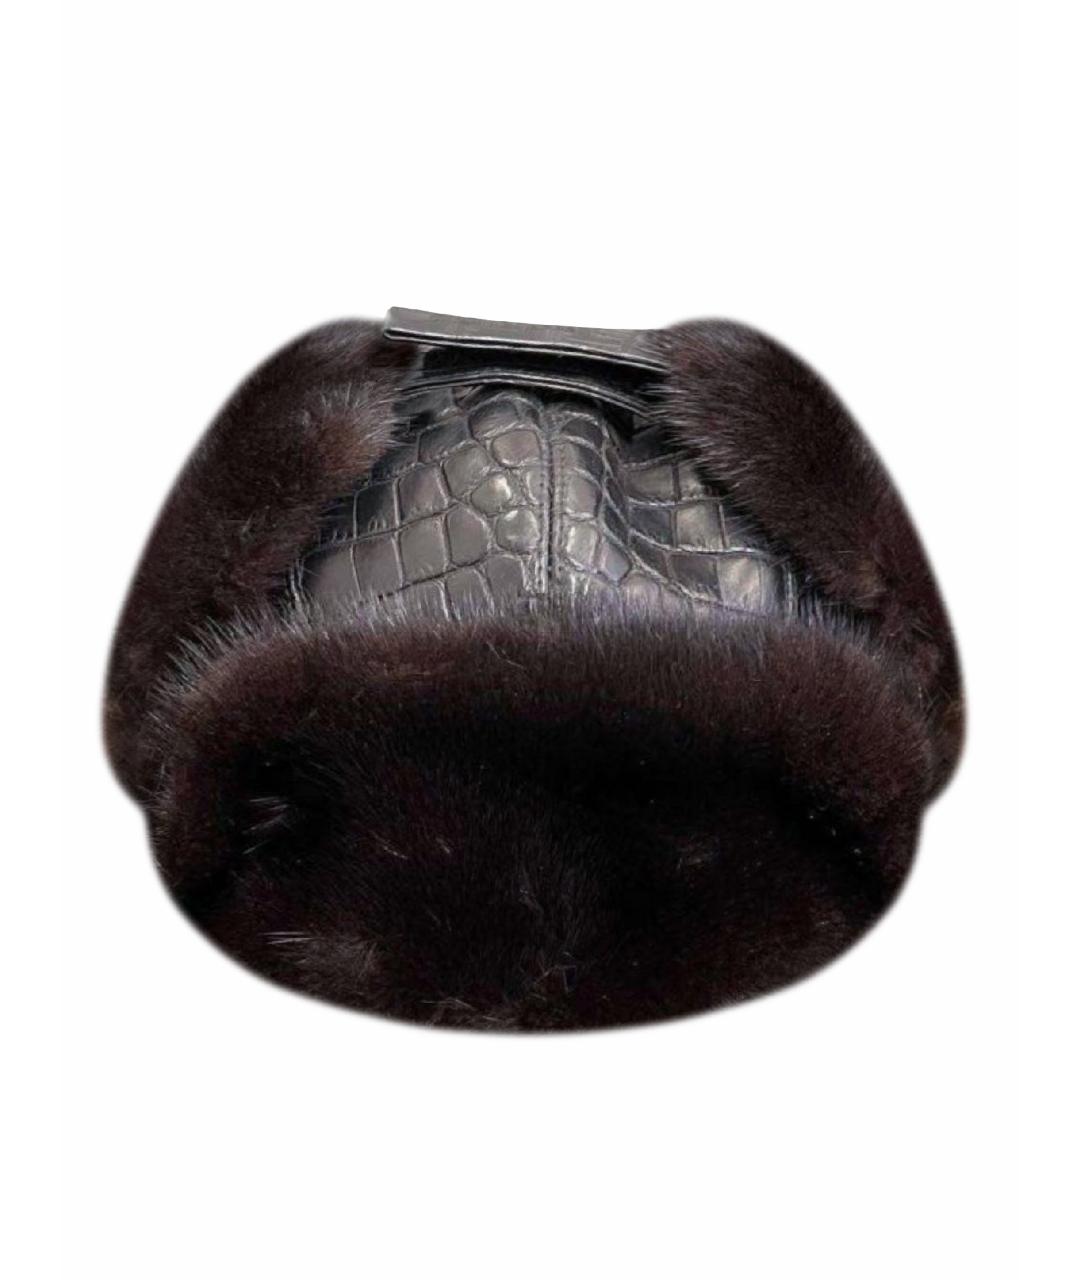 ZILLI Черная кожаная шапка, фото 1